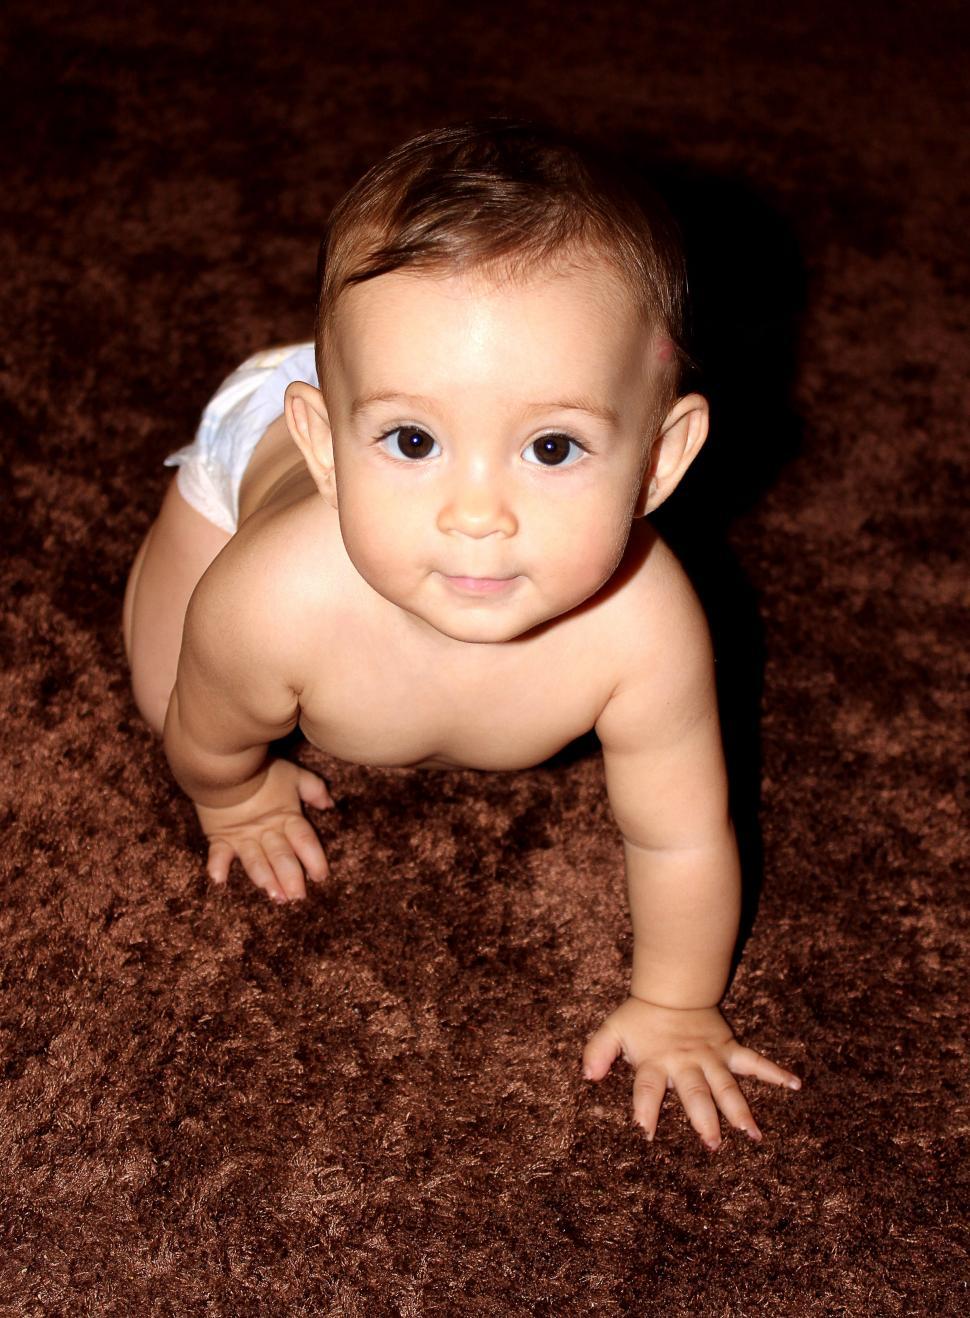 Free Image of Sweet baby crawling on carpet 